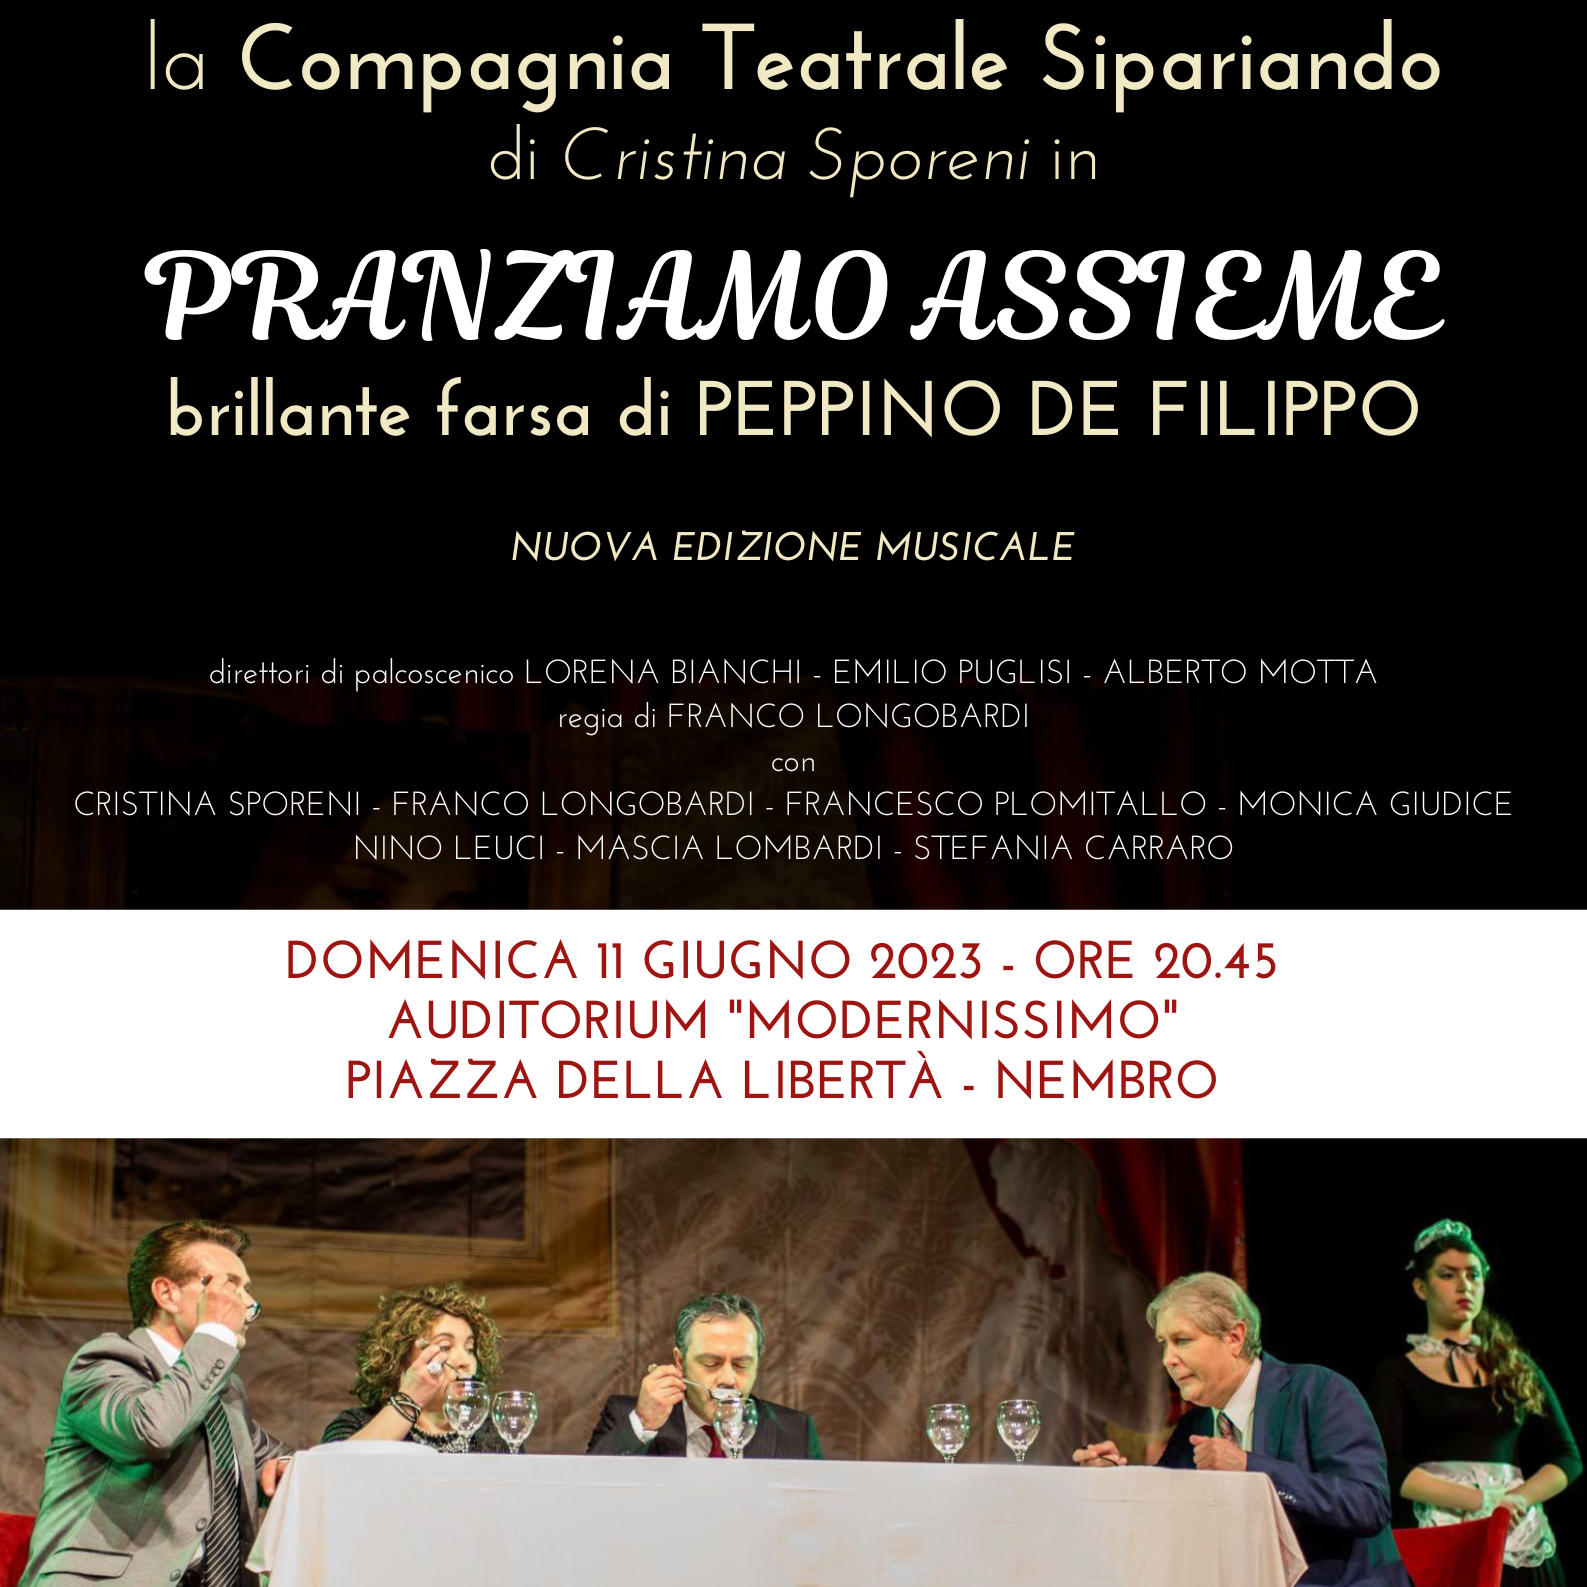 immagine Spettacolo teatrale: PRANZIAMO ASSIEME, brillante farsa di Peppino De Filippo